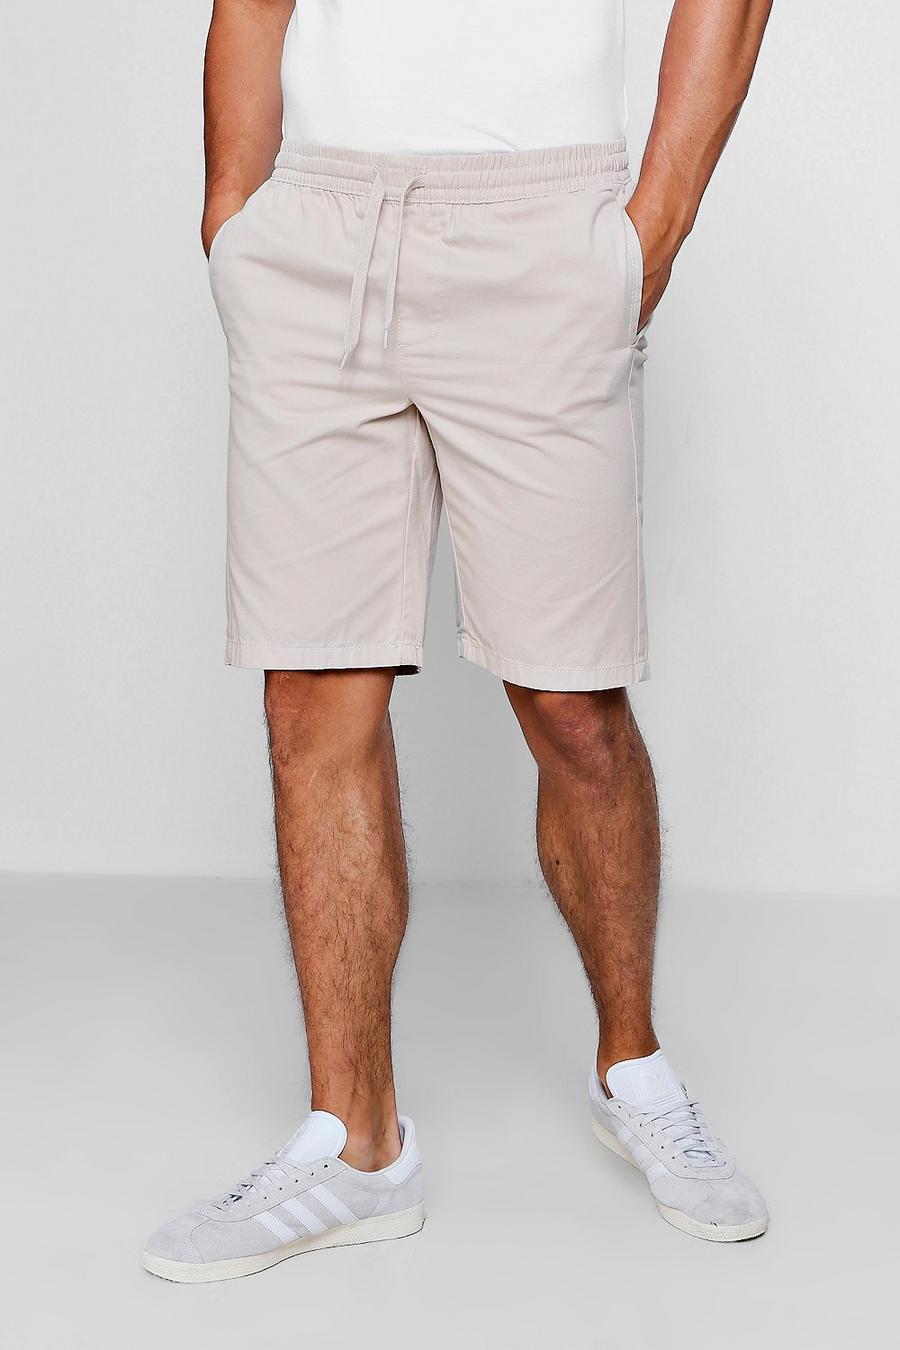 Pantalones cortos chinos con cinturilla elástica gris piedra image number 1